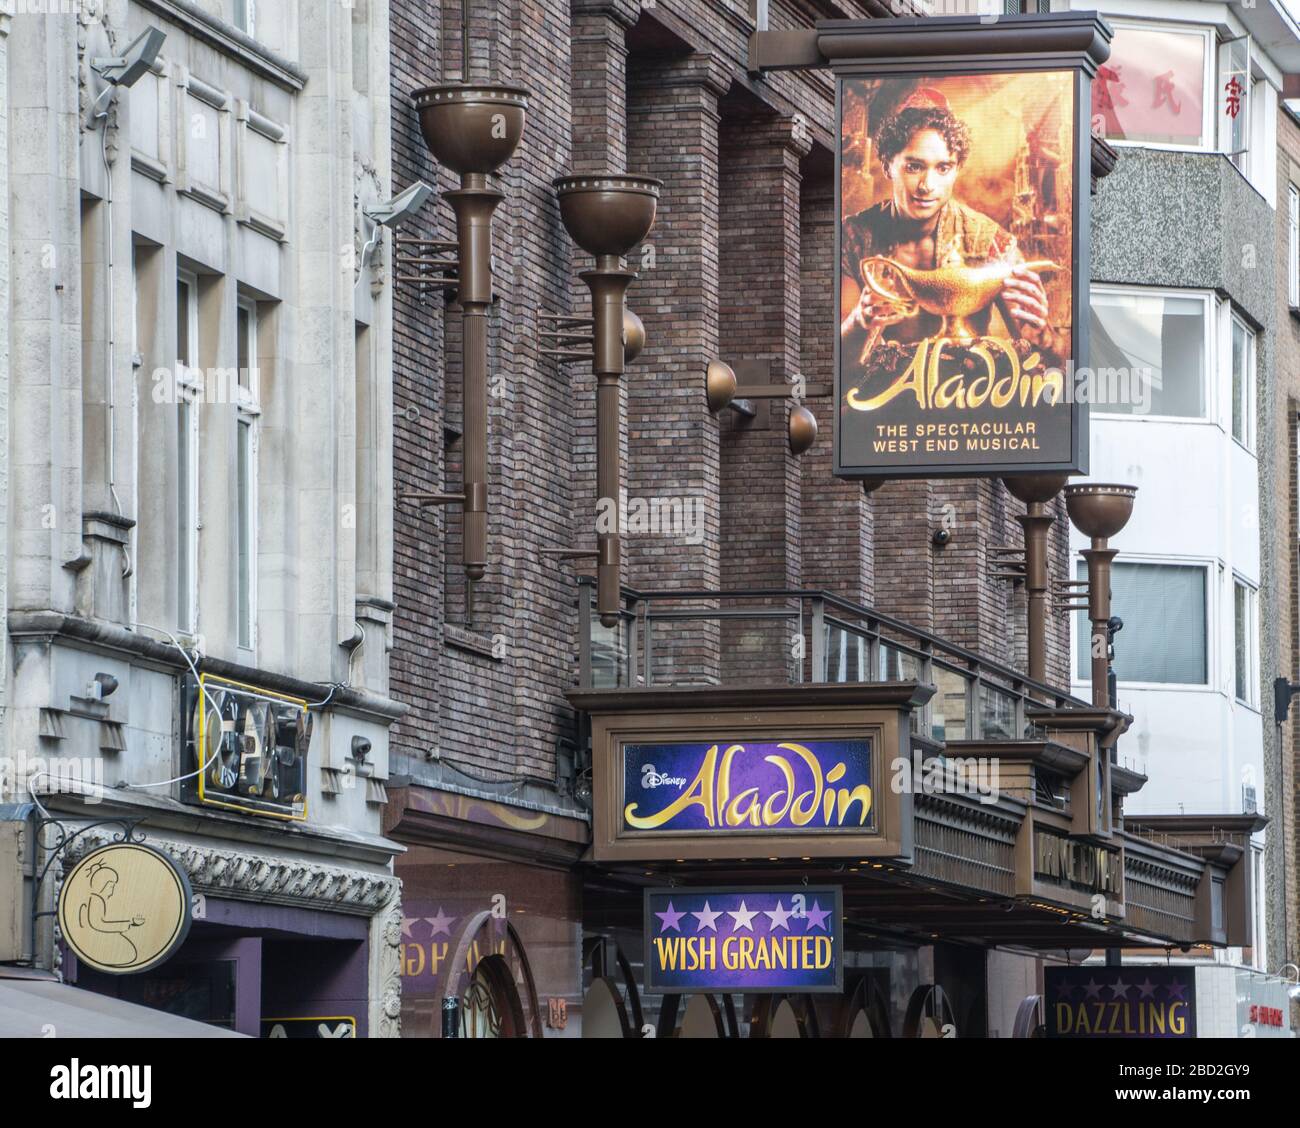 LONDRA - esterno del teatro Prince Edward che mostra Aladdin. Un popolare musical nel West End di Londra Foto Stock